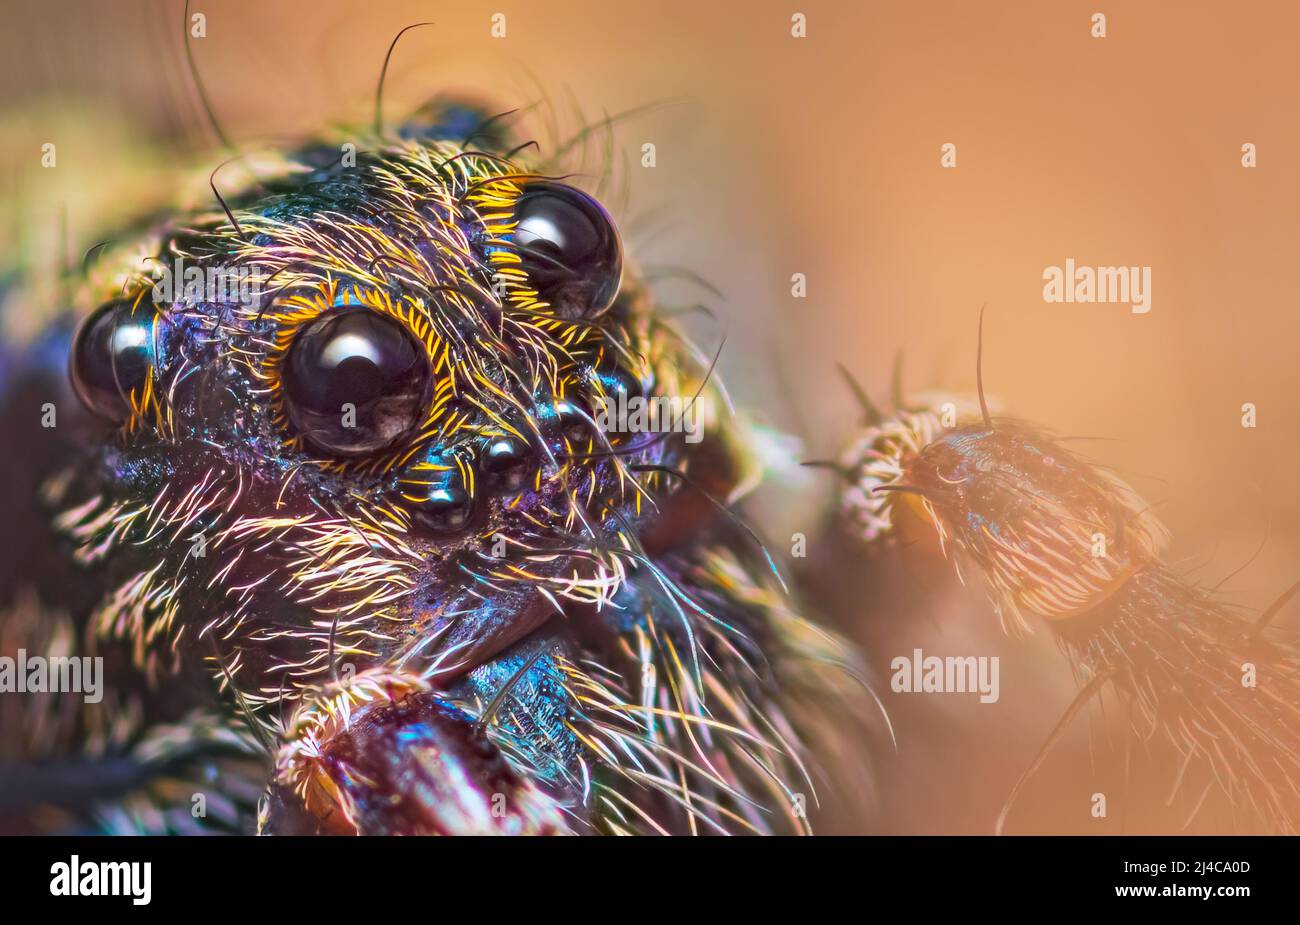 Scary Augen der dünn-legged Wolf Spider - Gattung Pardosa, Nahaufnahme detaillierte Fokus gestapelt Foto Stockfoto